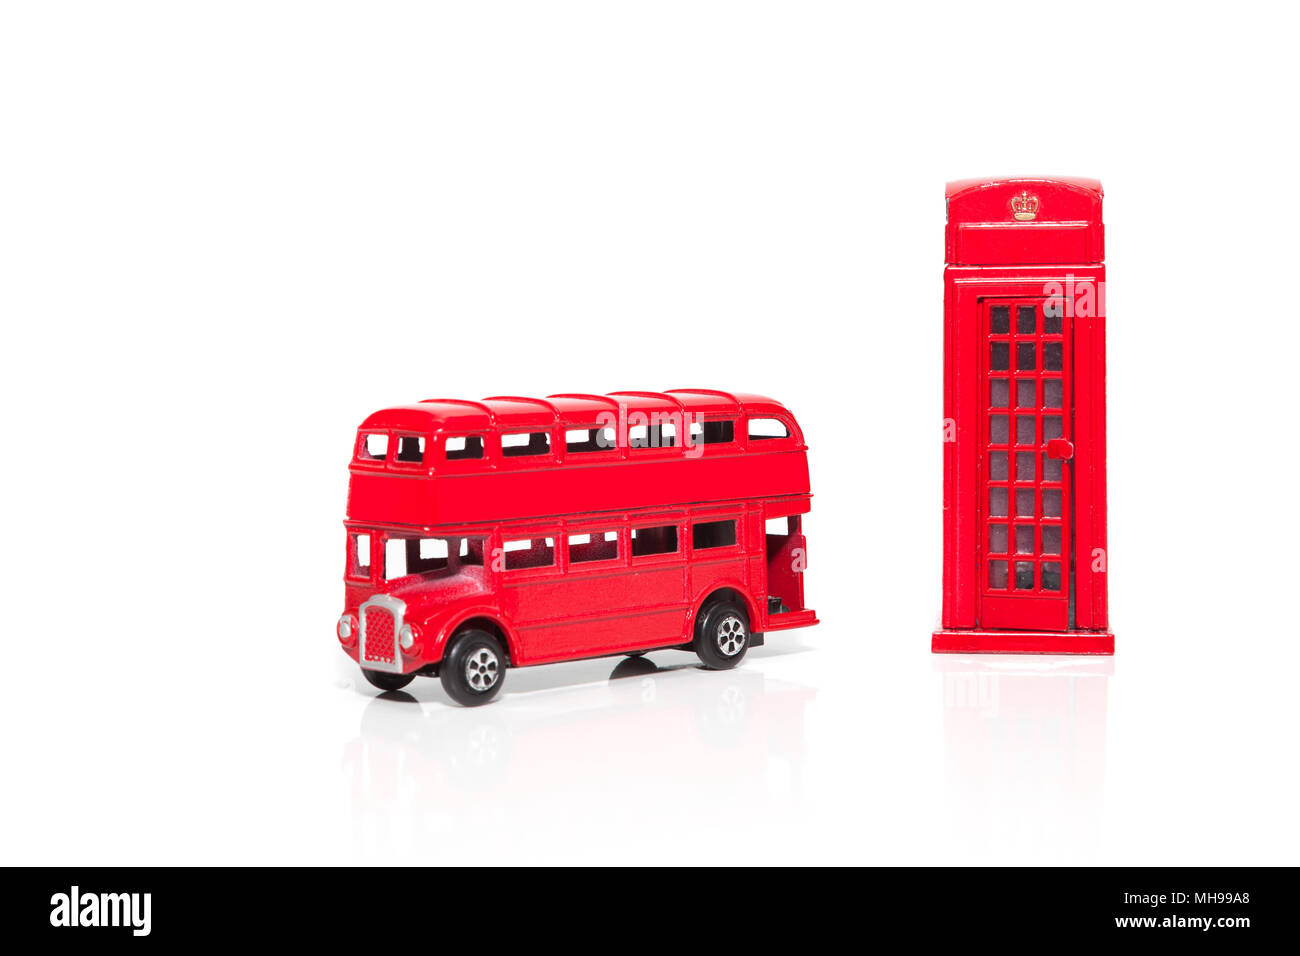 Un Bus Rouge London Doubledecker téléphone rouge et fort. Isolé sur fond blanc Banque D'Images